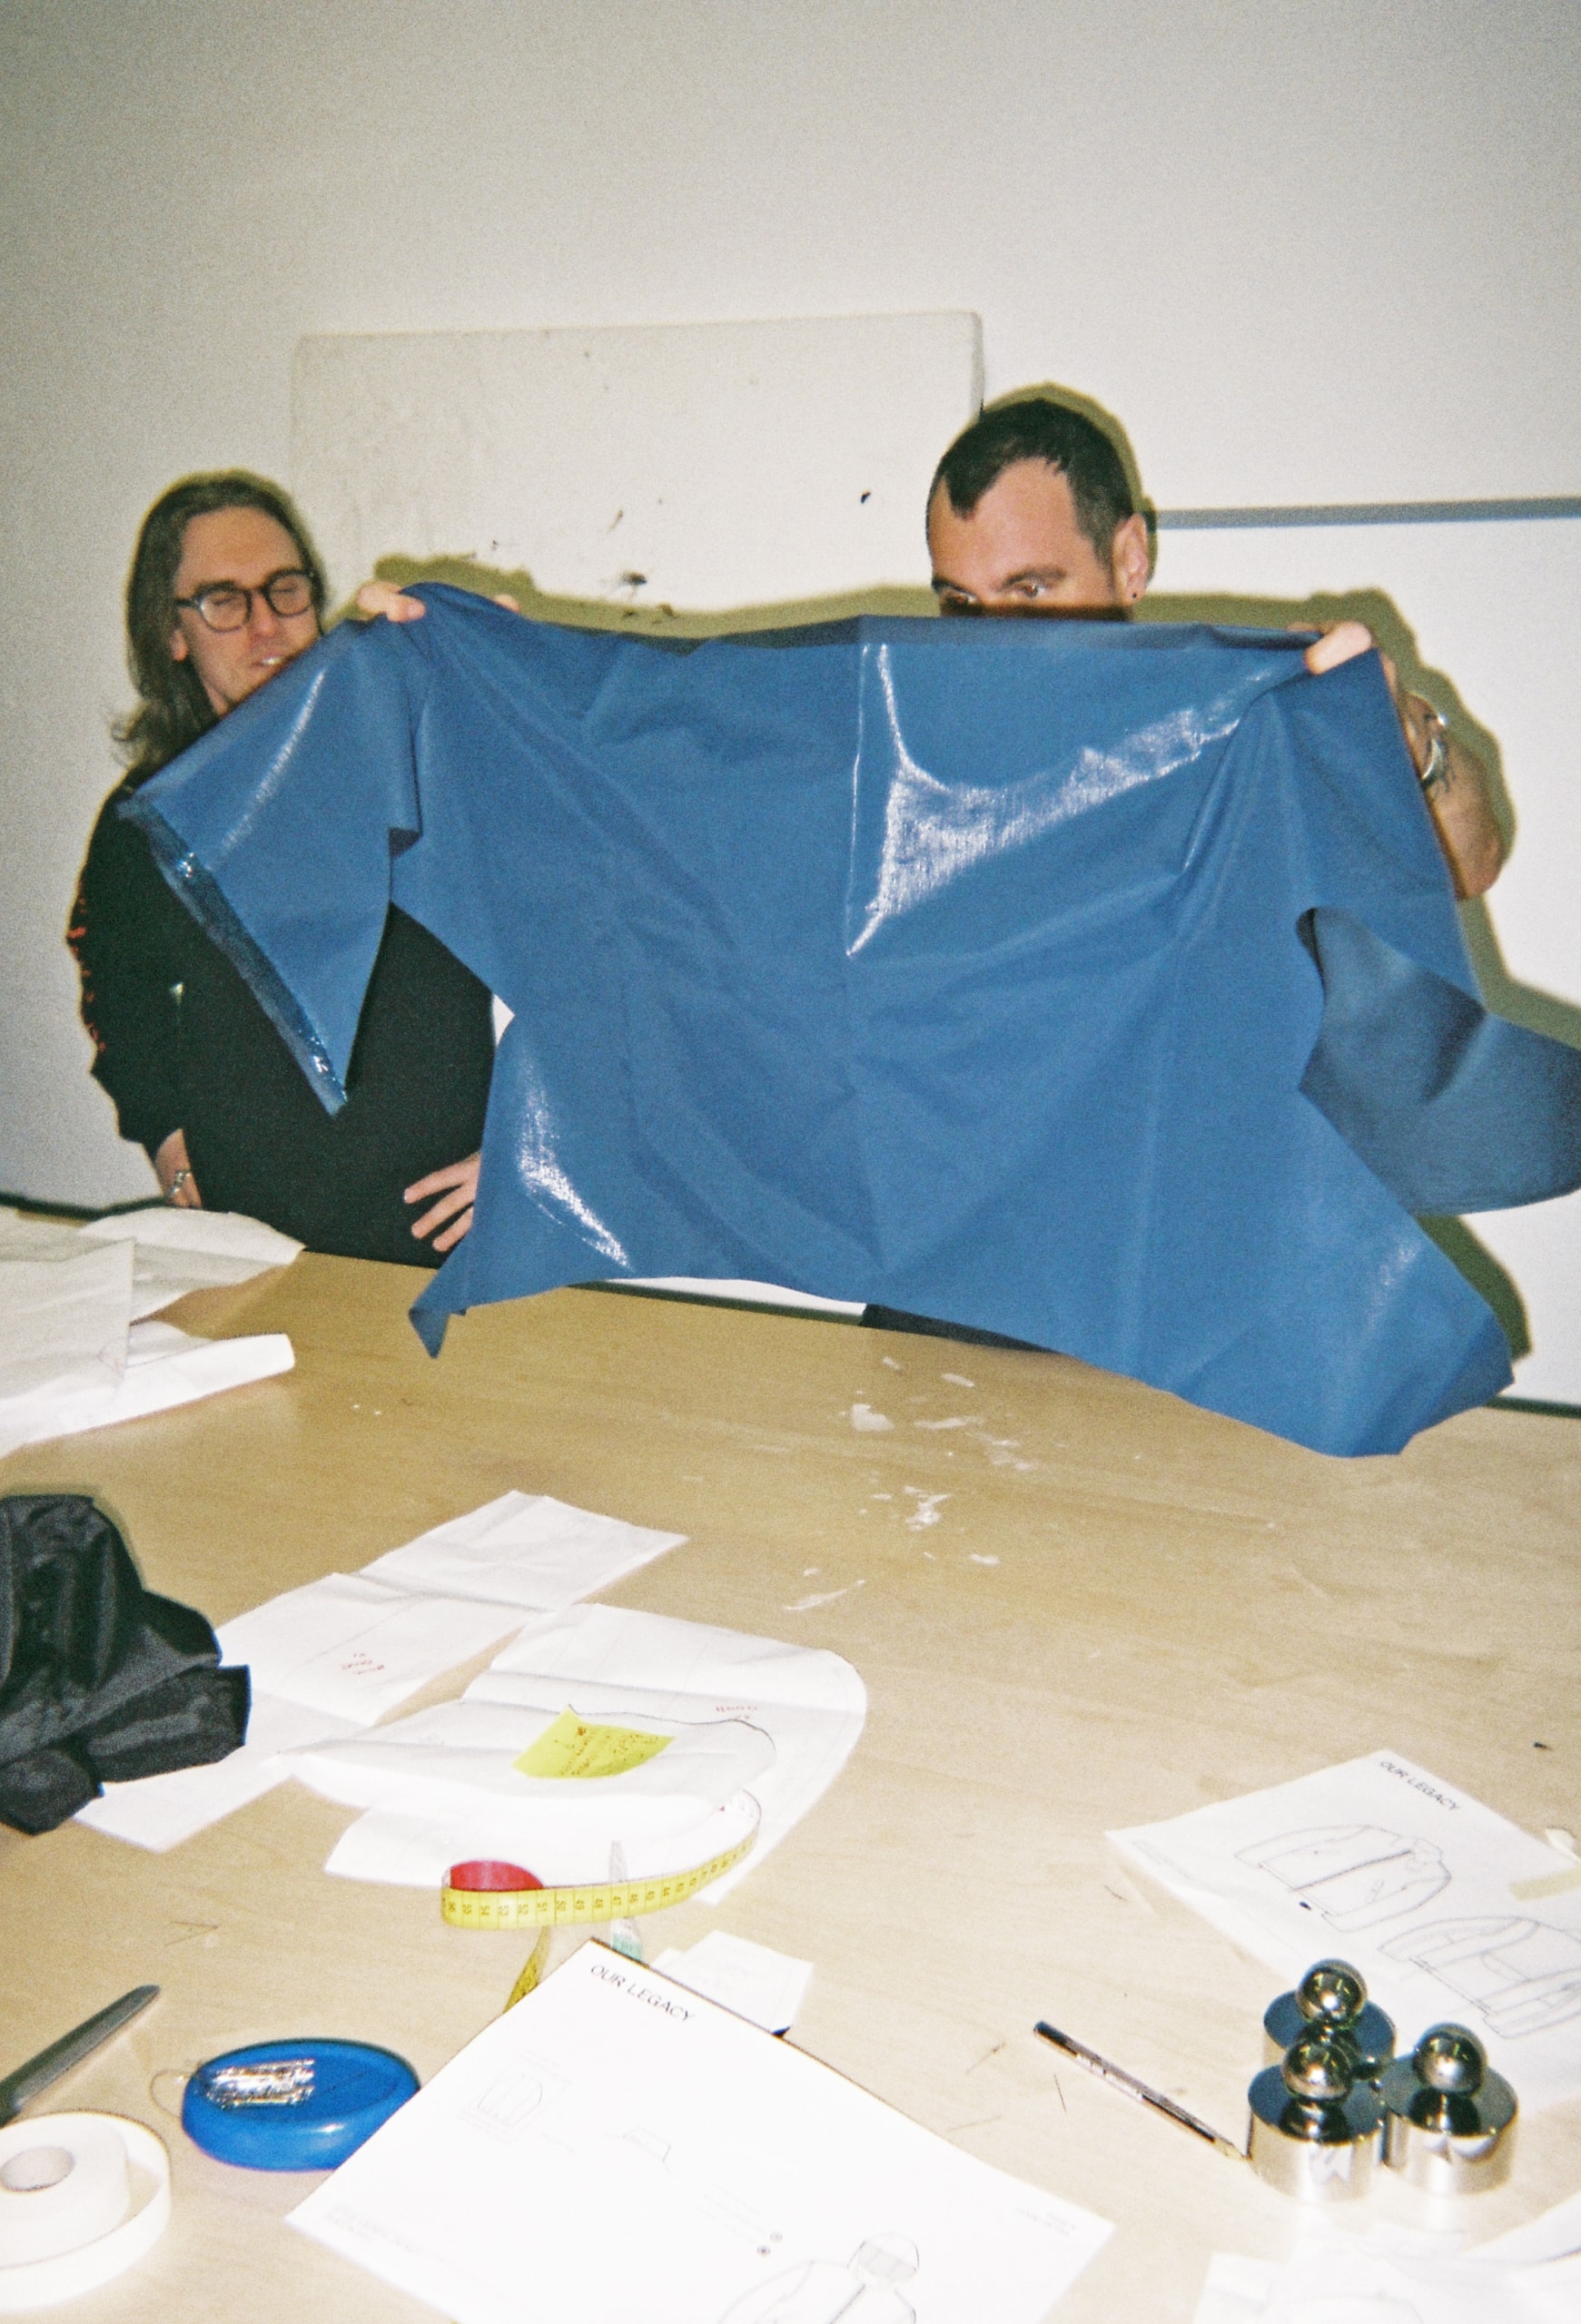 瑞典時裝品牌 OUR LEGACY 成員用鏡頭記錄下工作室的一天